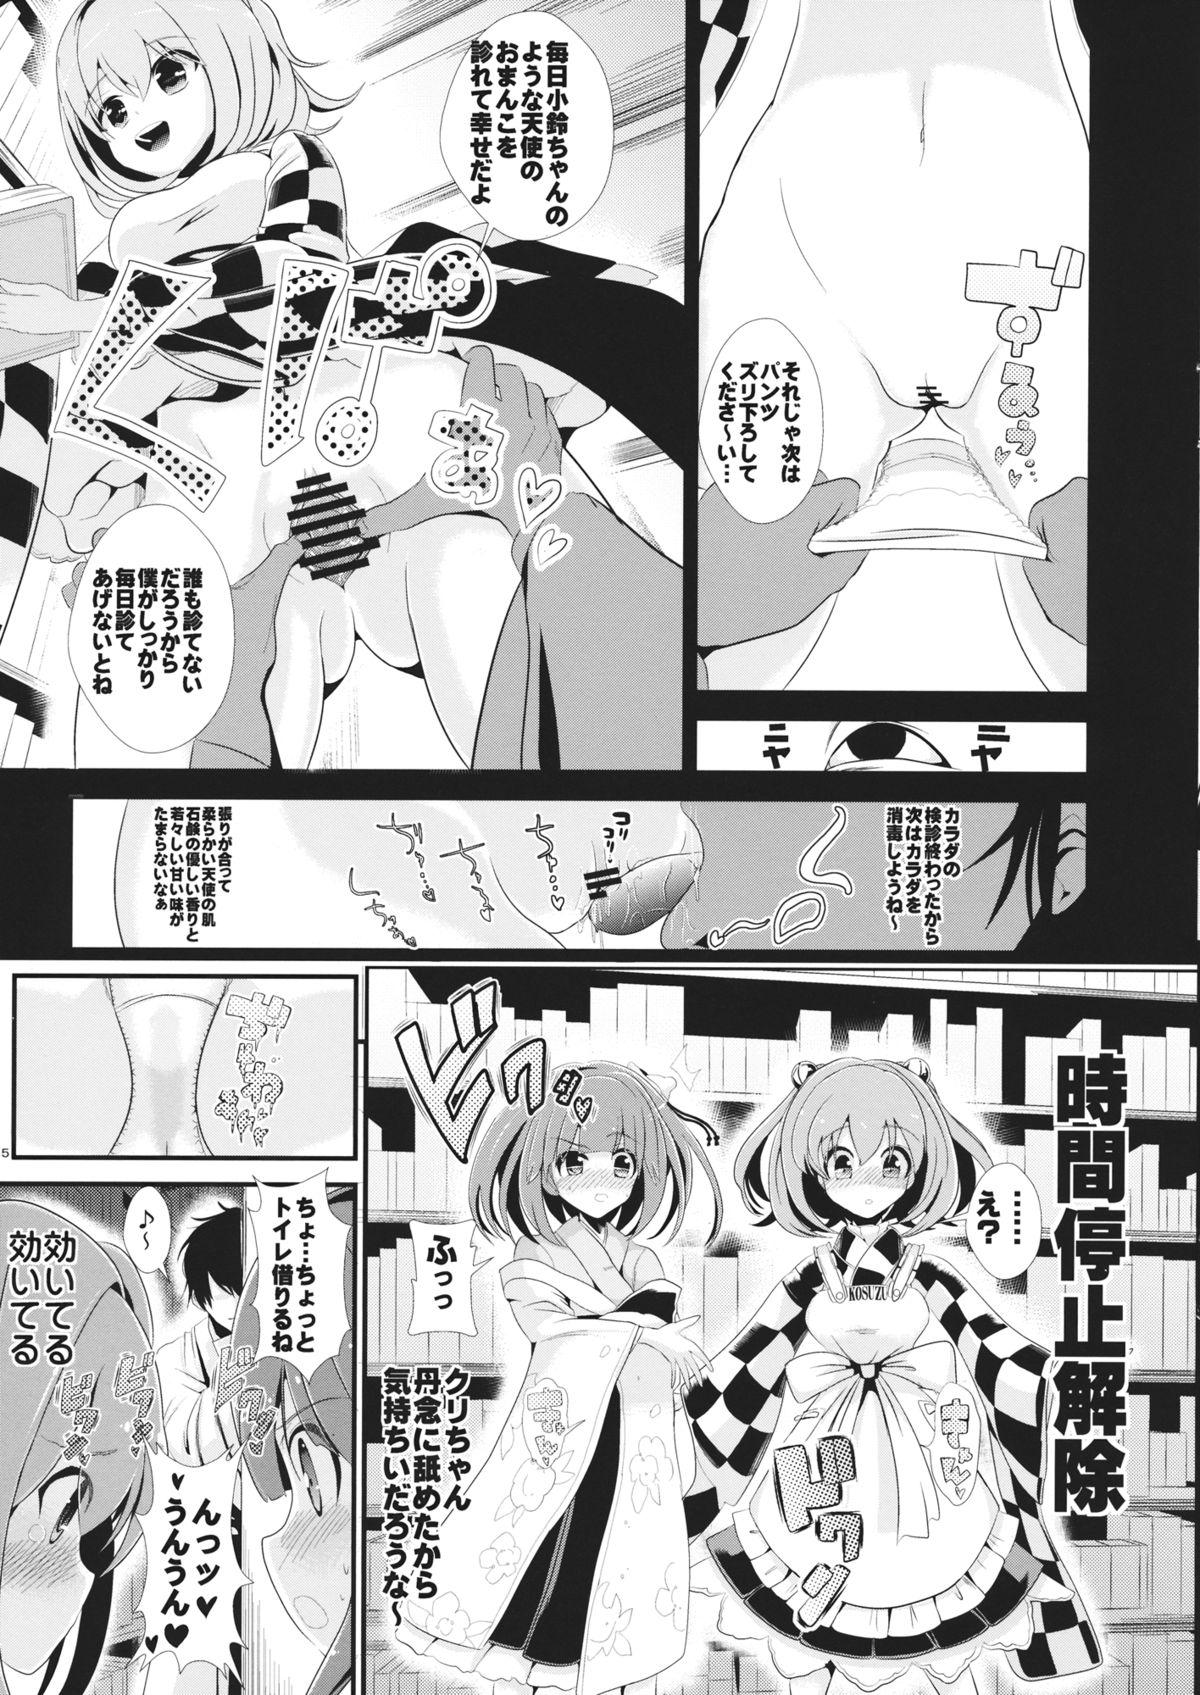 Candid Touhou Jikan 7 Motoori Kosuzu & Hieda no Akyuu - Touhou project Pmv - Page 6